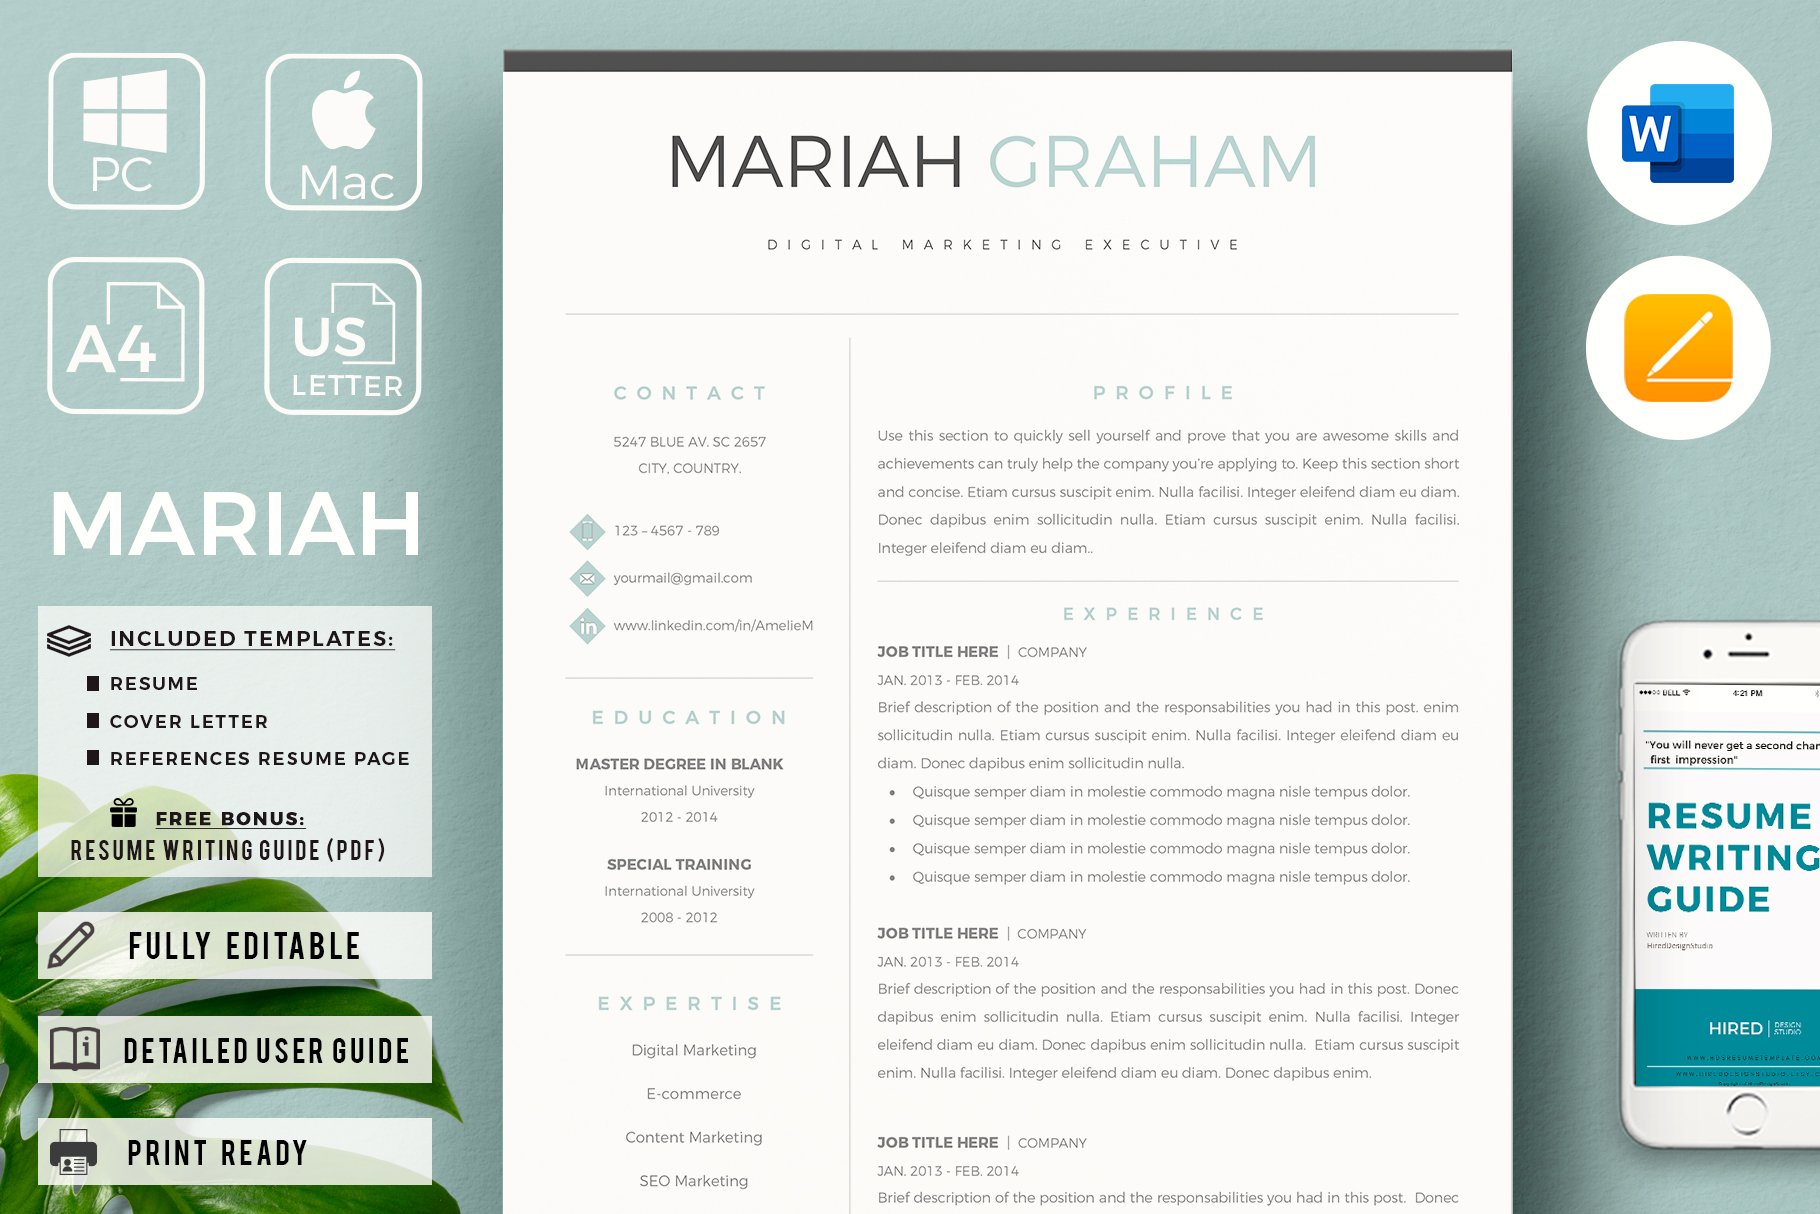 Modern Resume design + Cover Letter cover image.